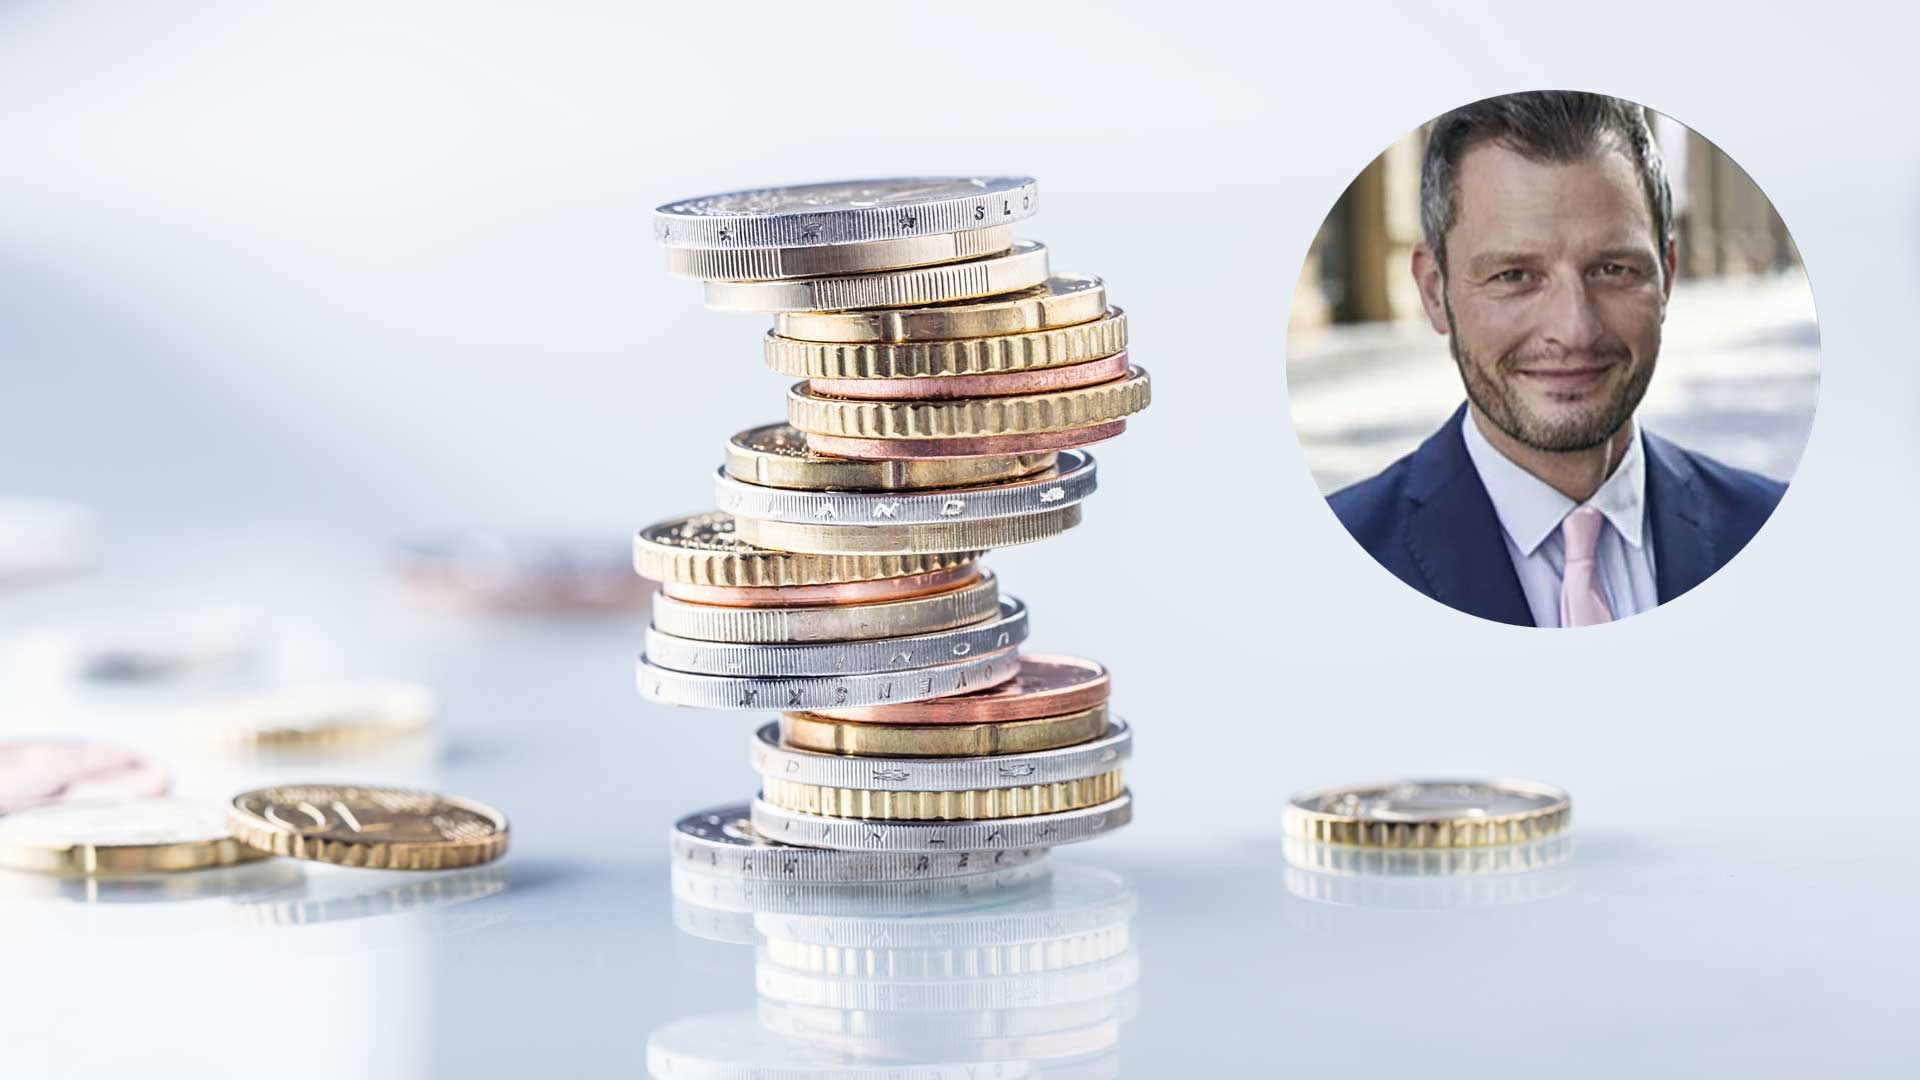 Technische Analyse Währungen - Martin Utschneider Avatar und ein Münzstapel vor blauem Hintergrund